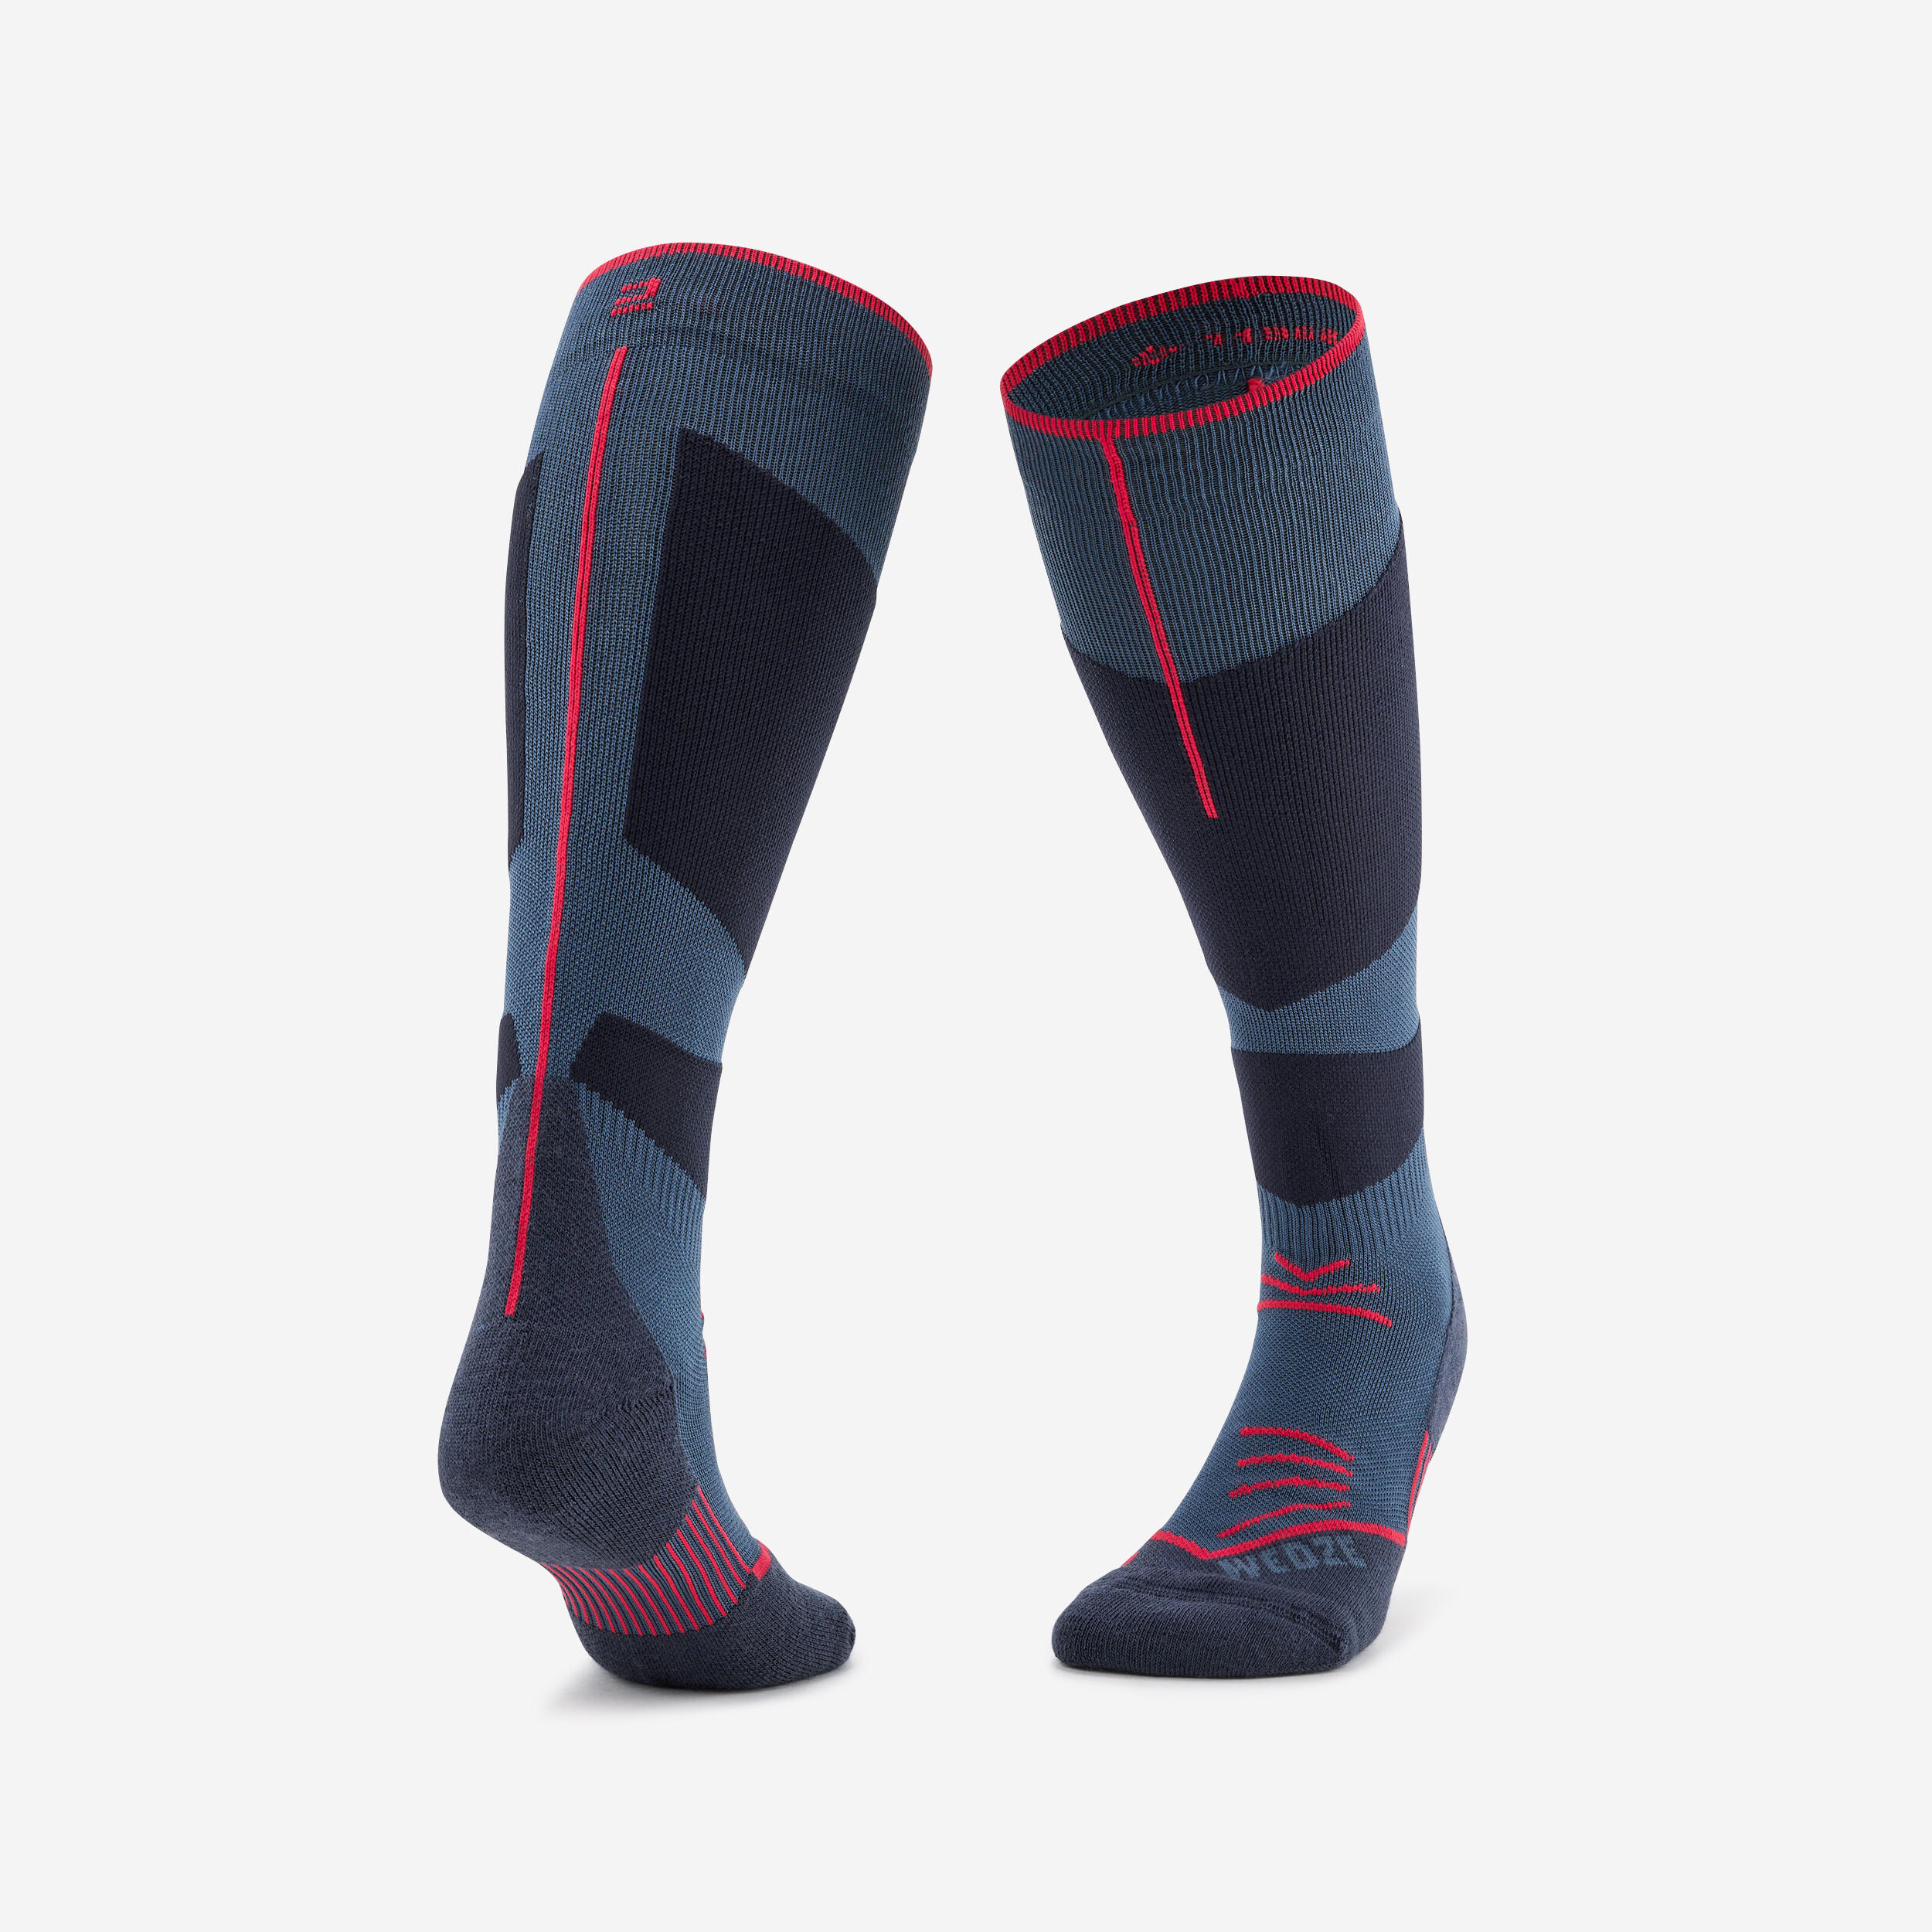 chaussettes de ski adulte - 500 - bleu marine rouge - wedze